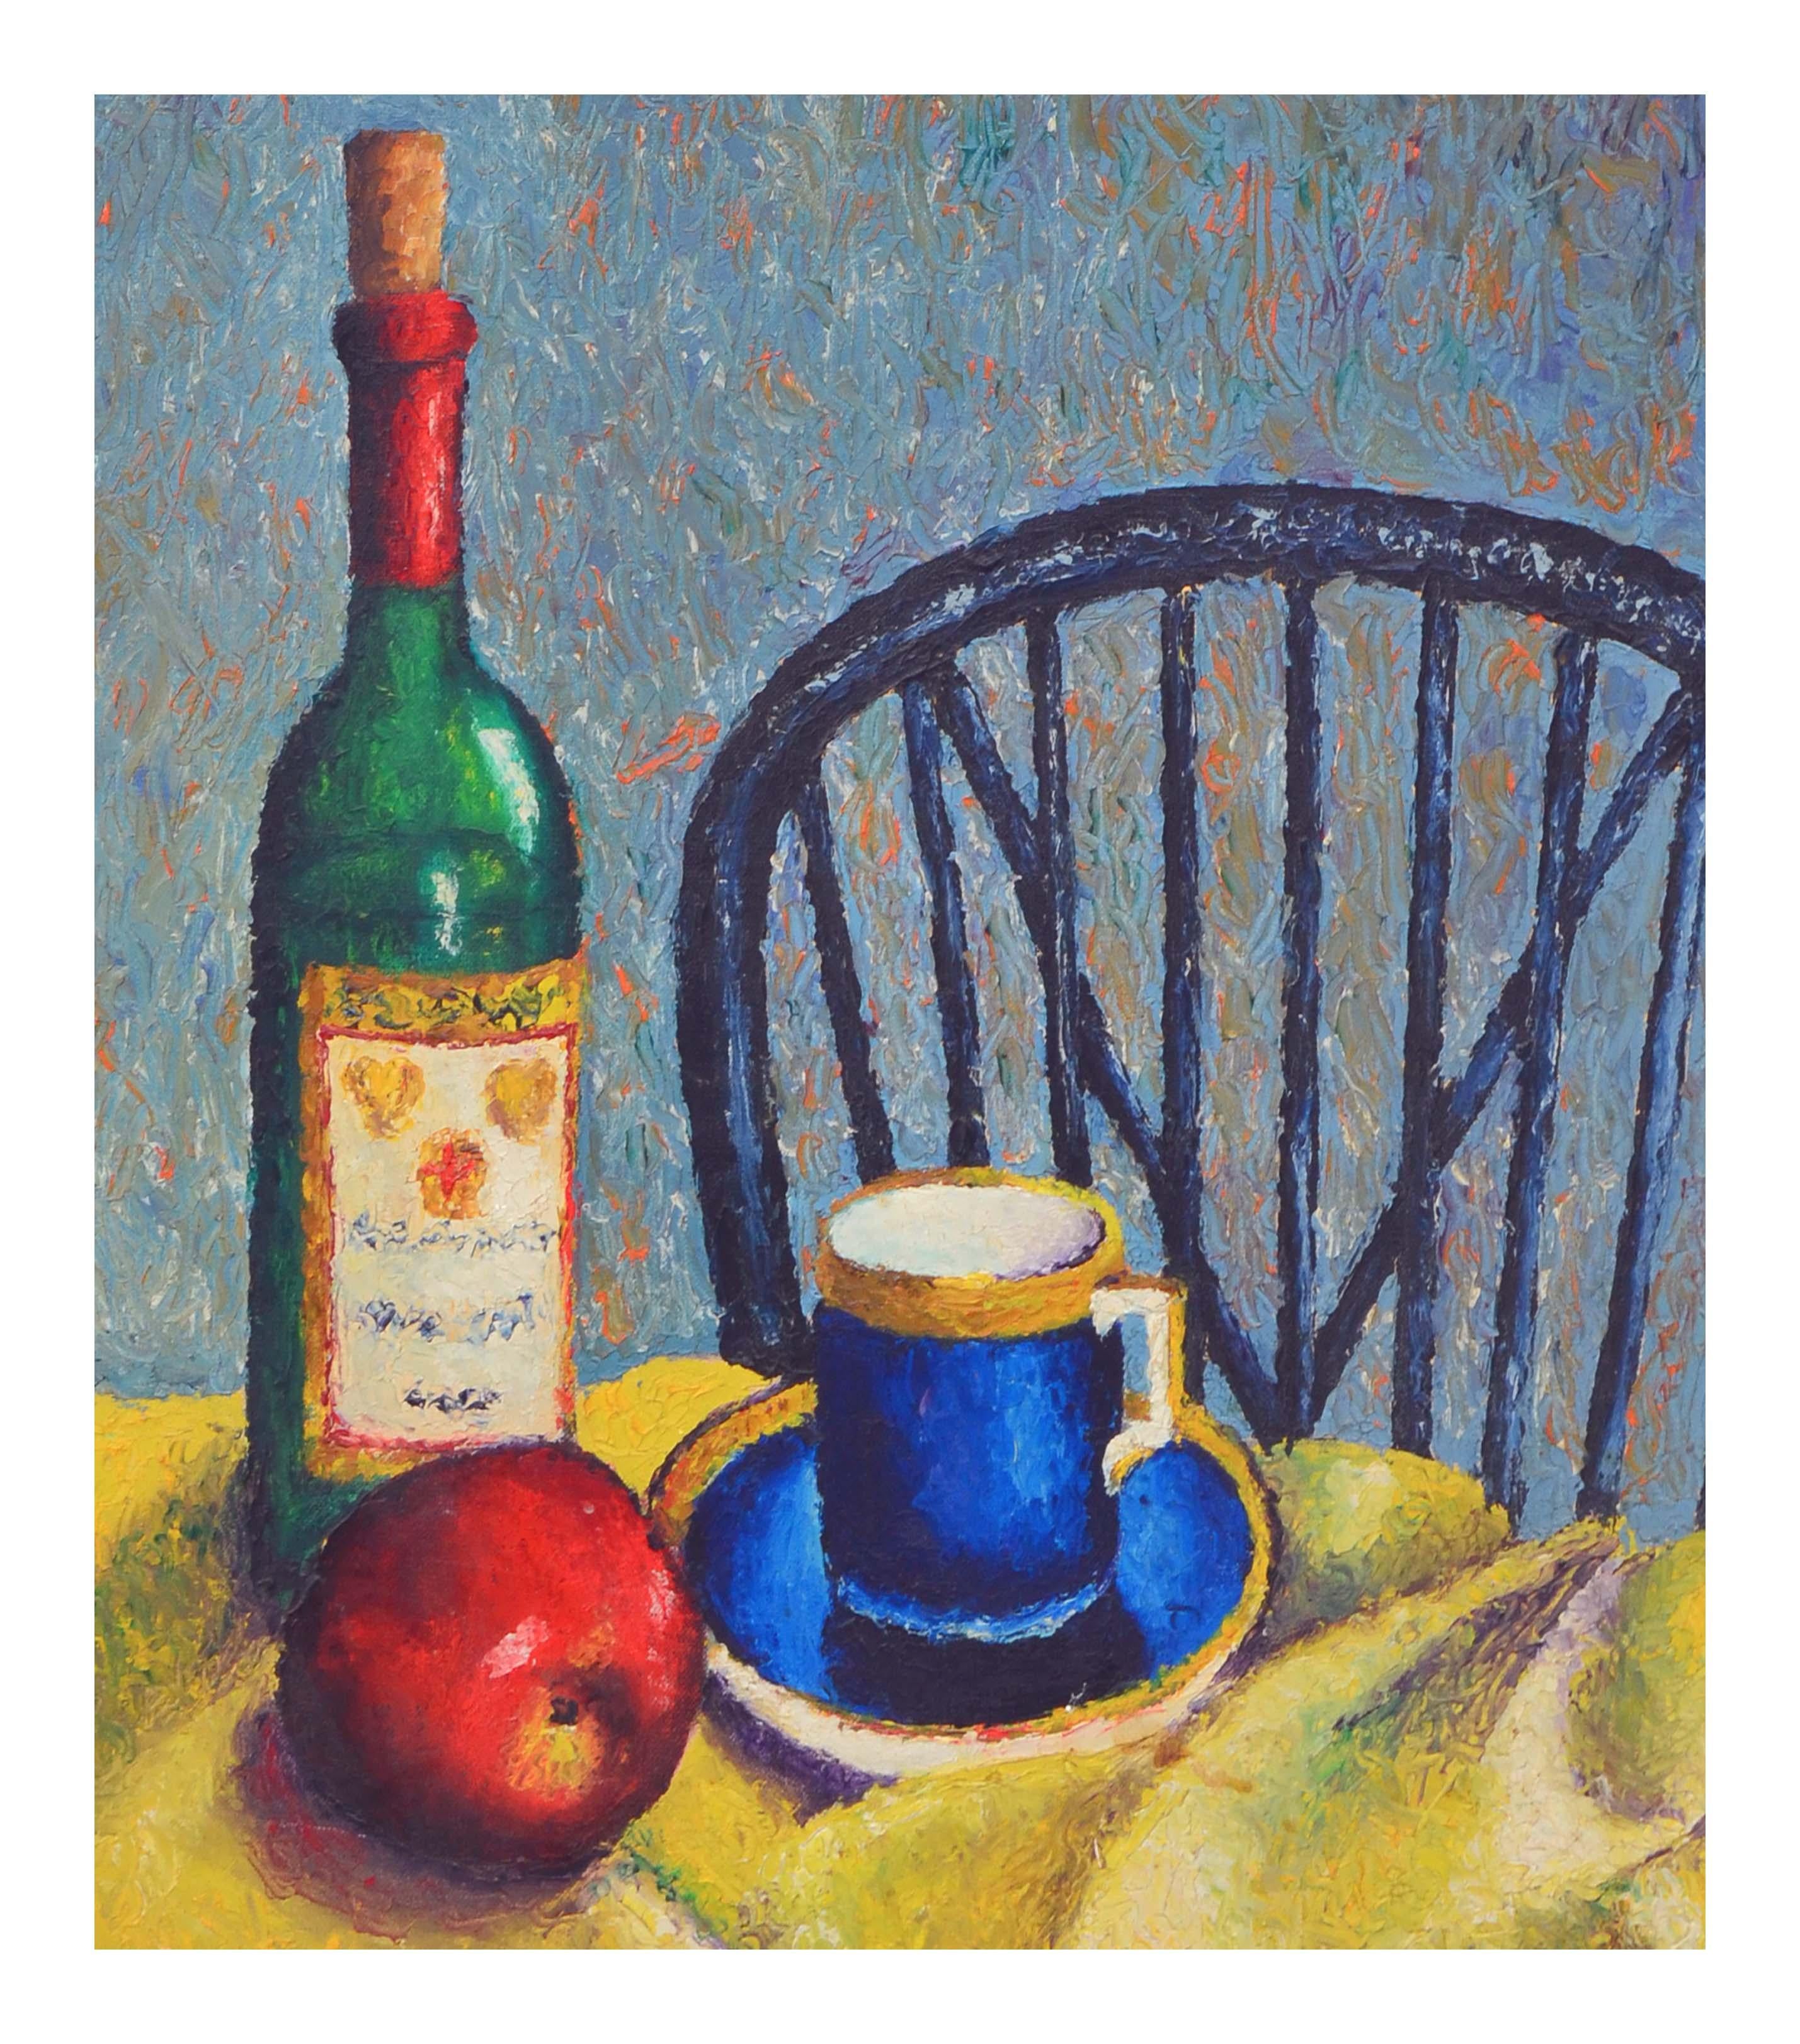 Zeitgenössisches zeitgenössisches Stillleben mit Apfel und Weinflasche  (Amerikanischer Impressionismus), Painting, von E. Star